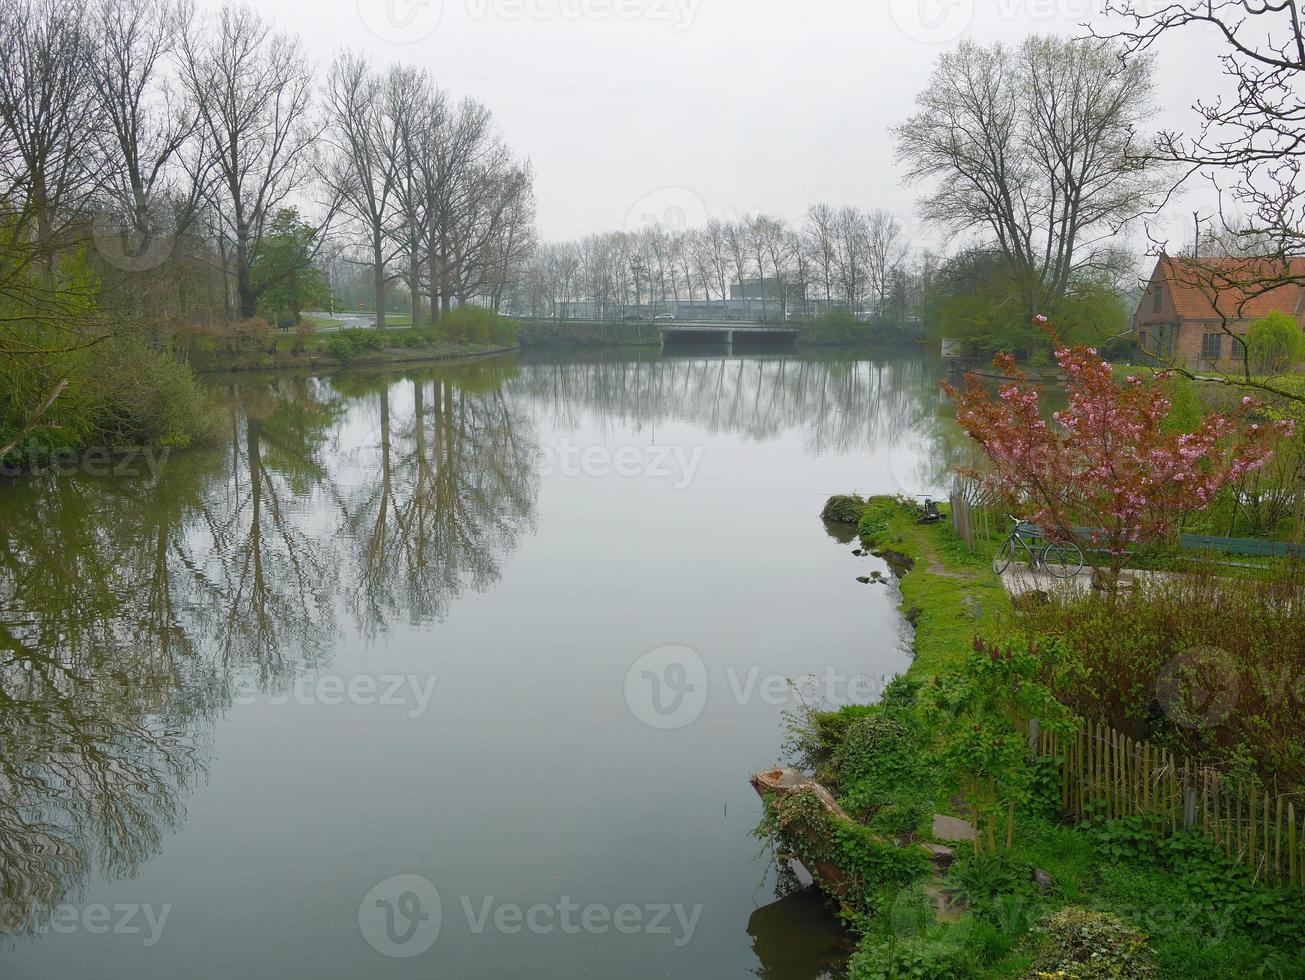 Hermosa escena el agua refleja la orilla del lago en el parque verde de Brujas, Bélgica foto